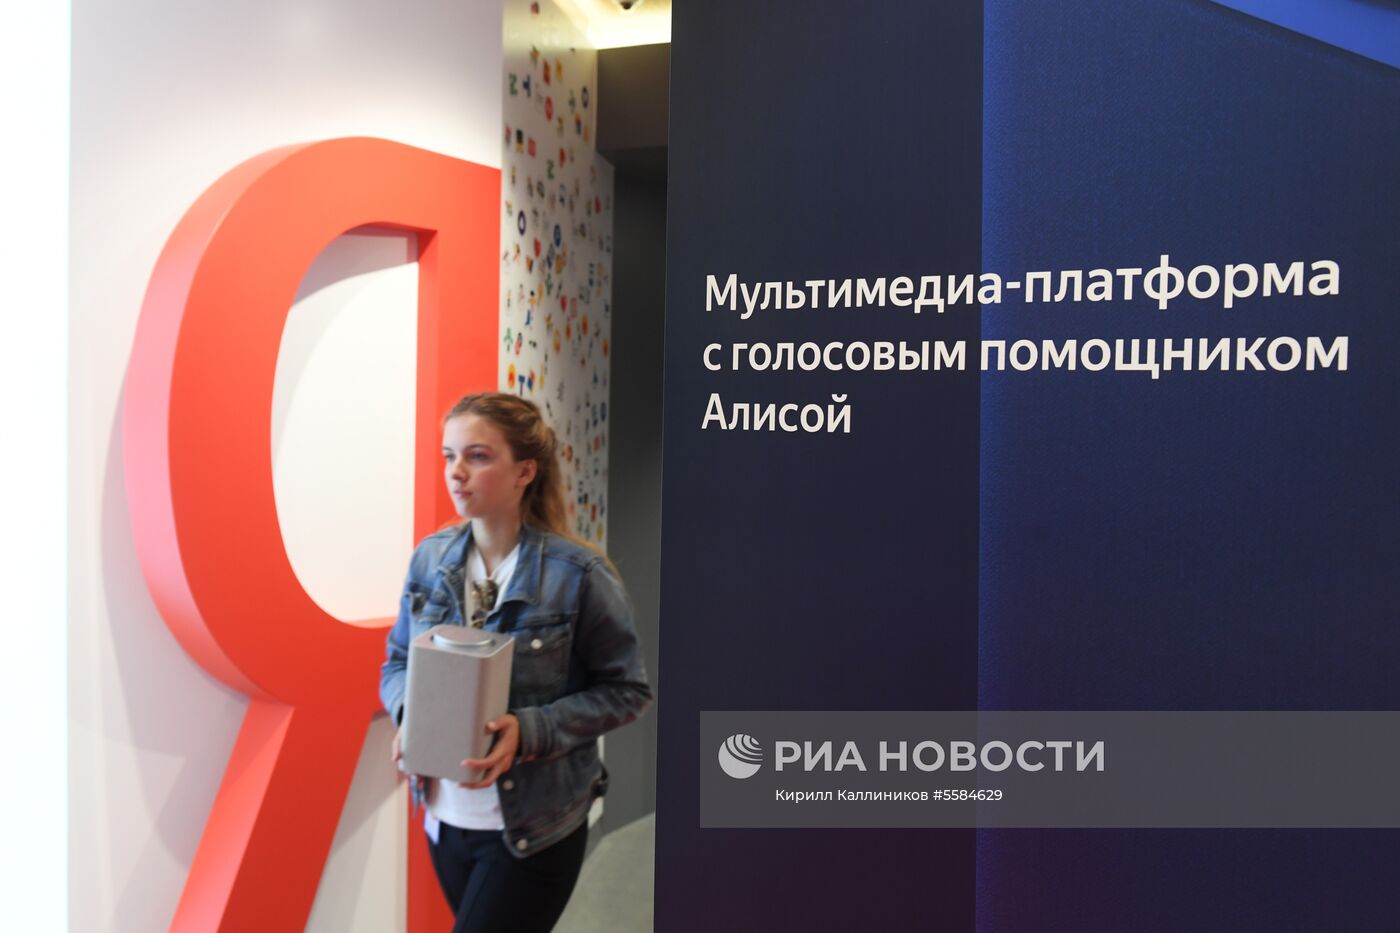 Стартовала продажа умной колонки "Яндекс.Станция"